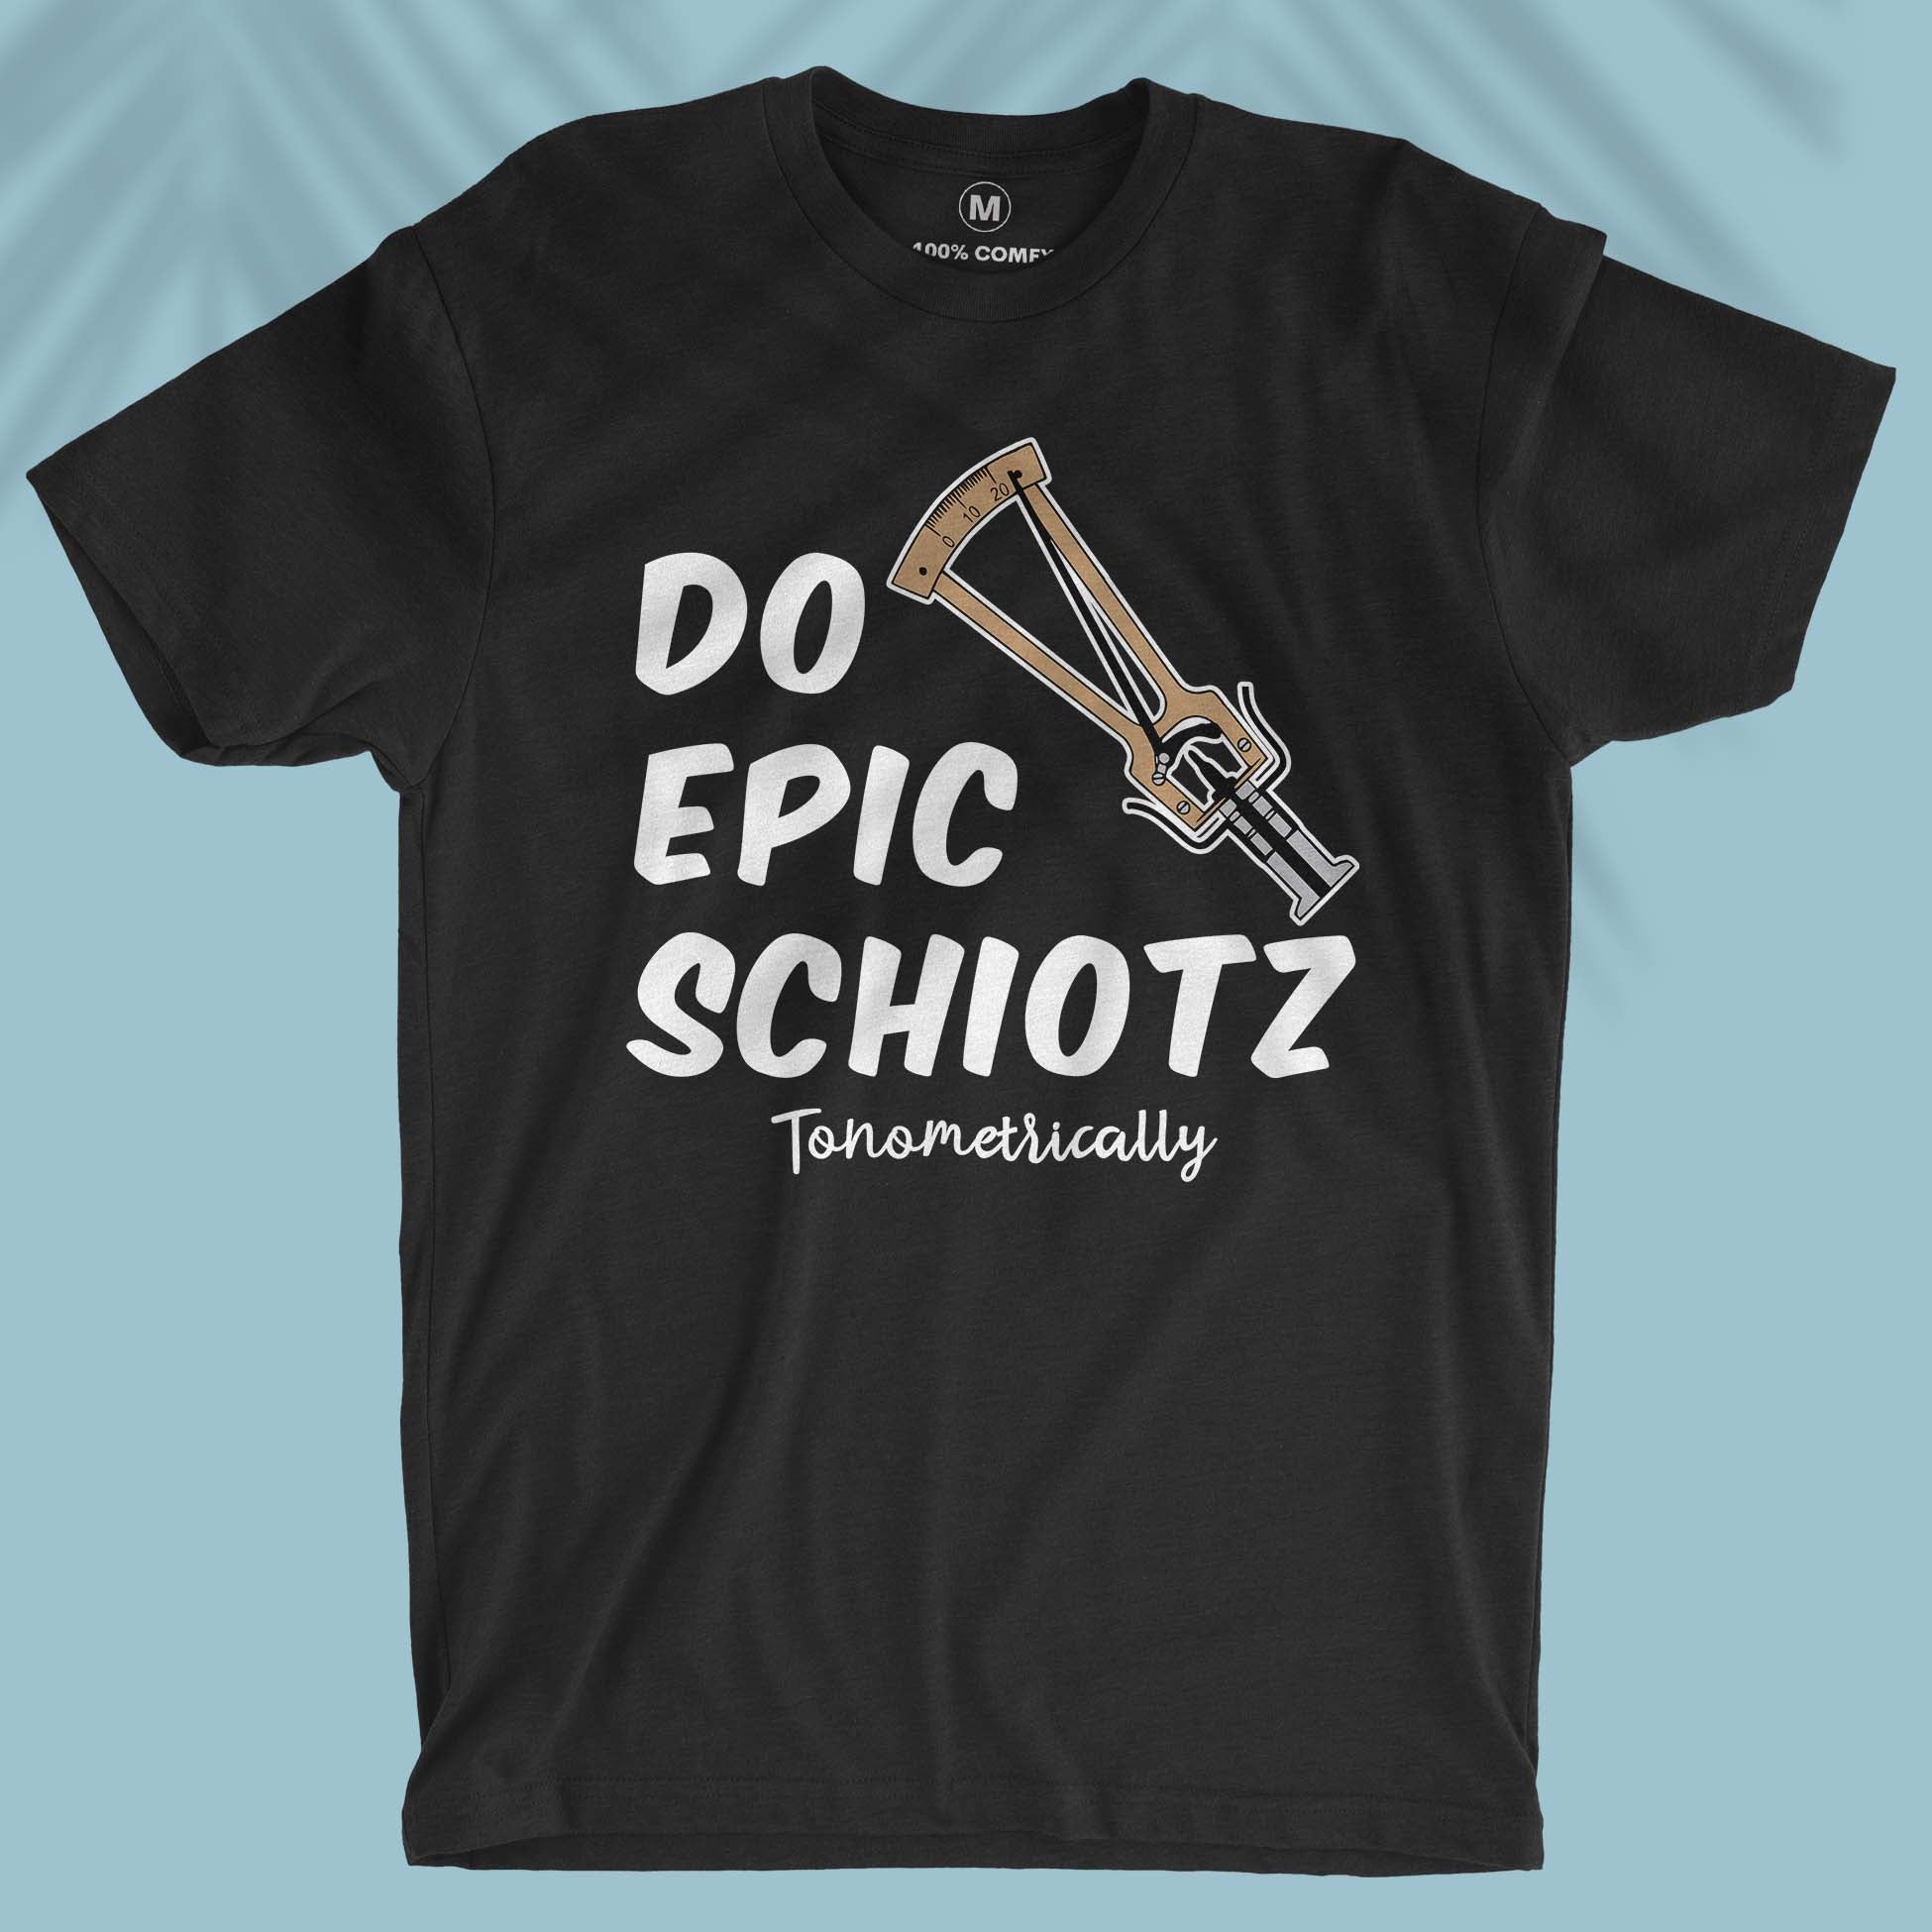 Do Epic Schiotz - Unisex T-shirt